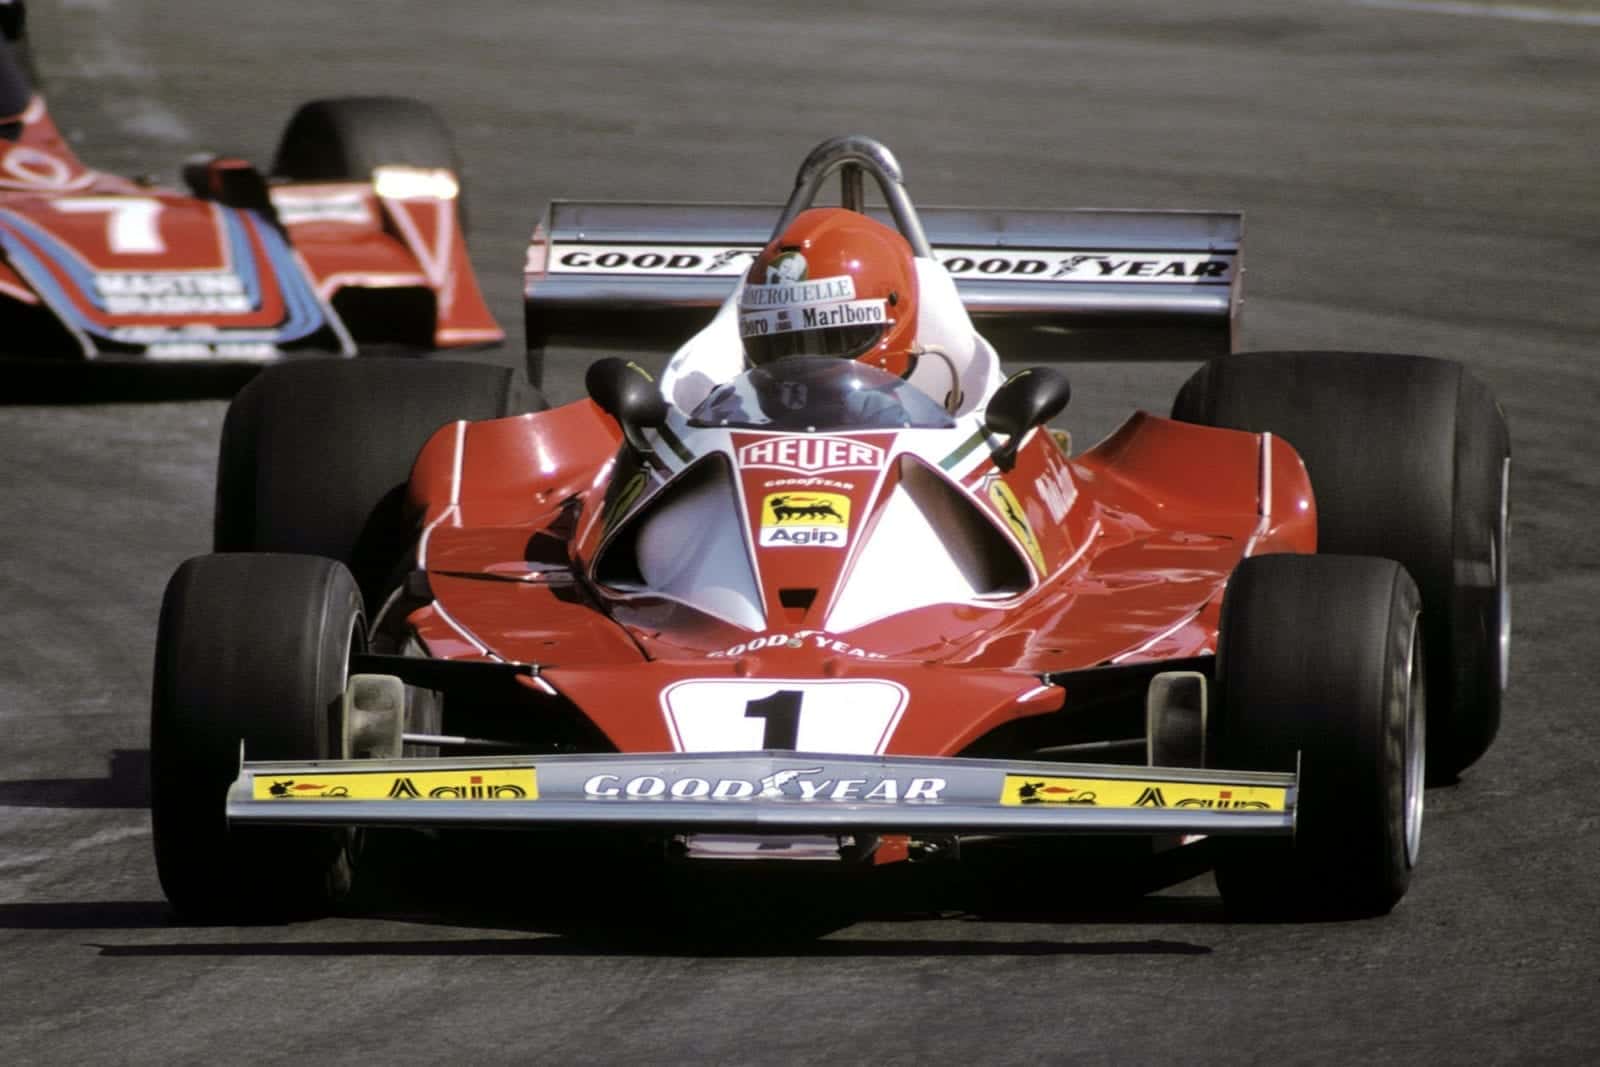 Niki Lauda (Ferrari), 1976 Belgian Grand Prix, Zolder.